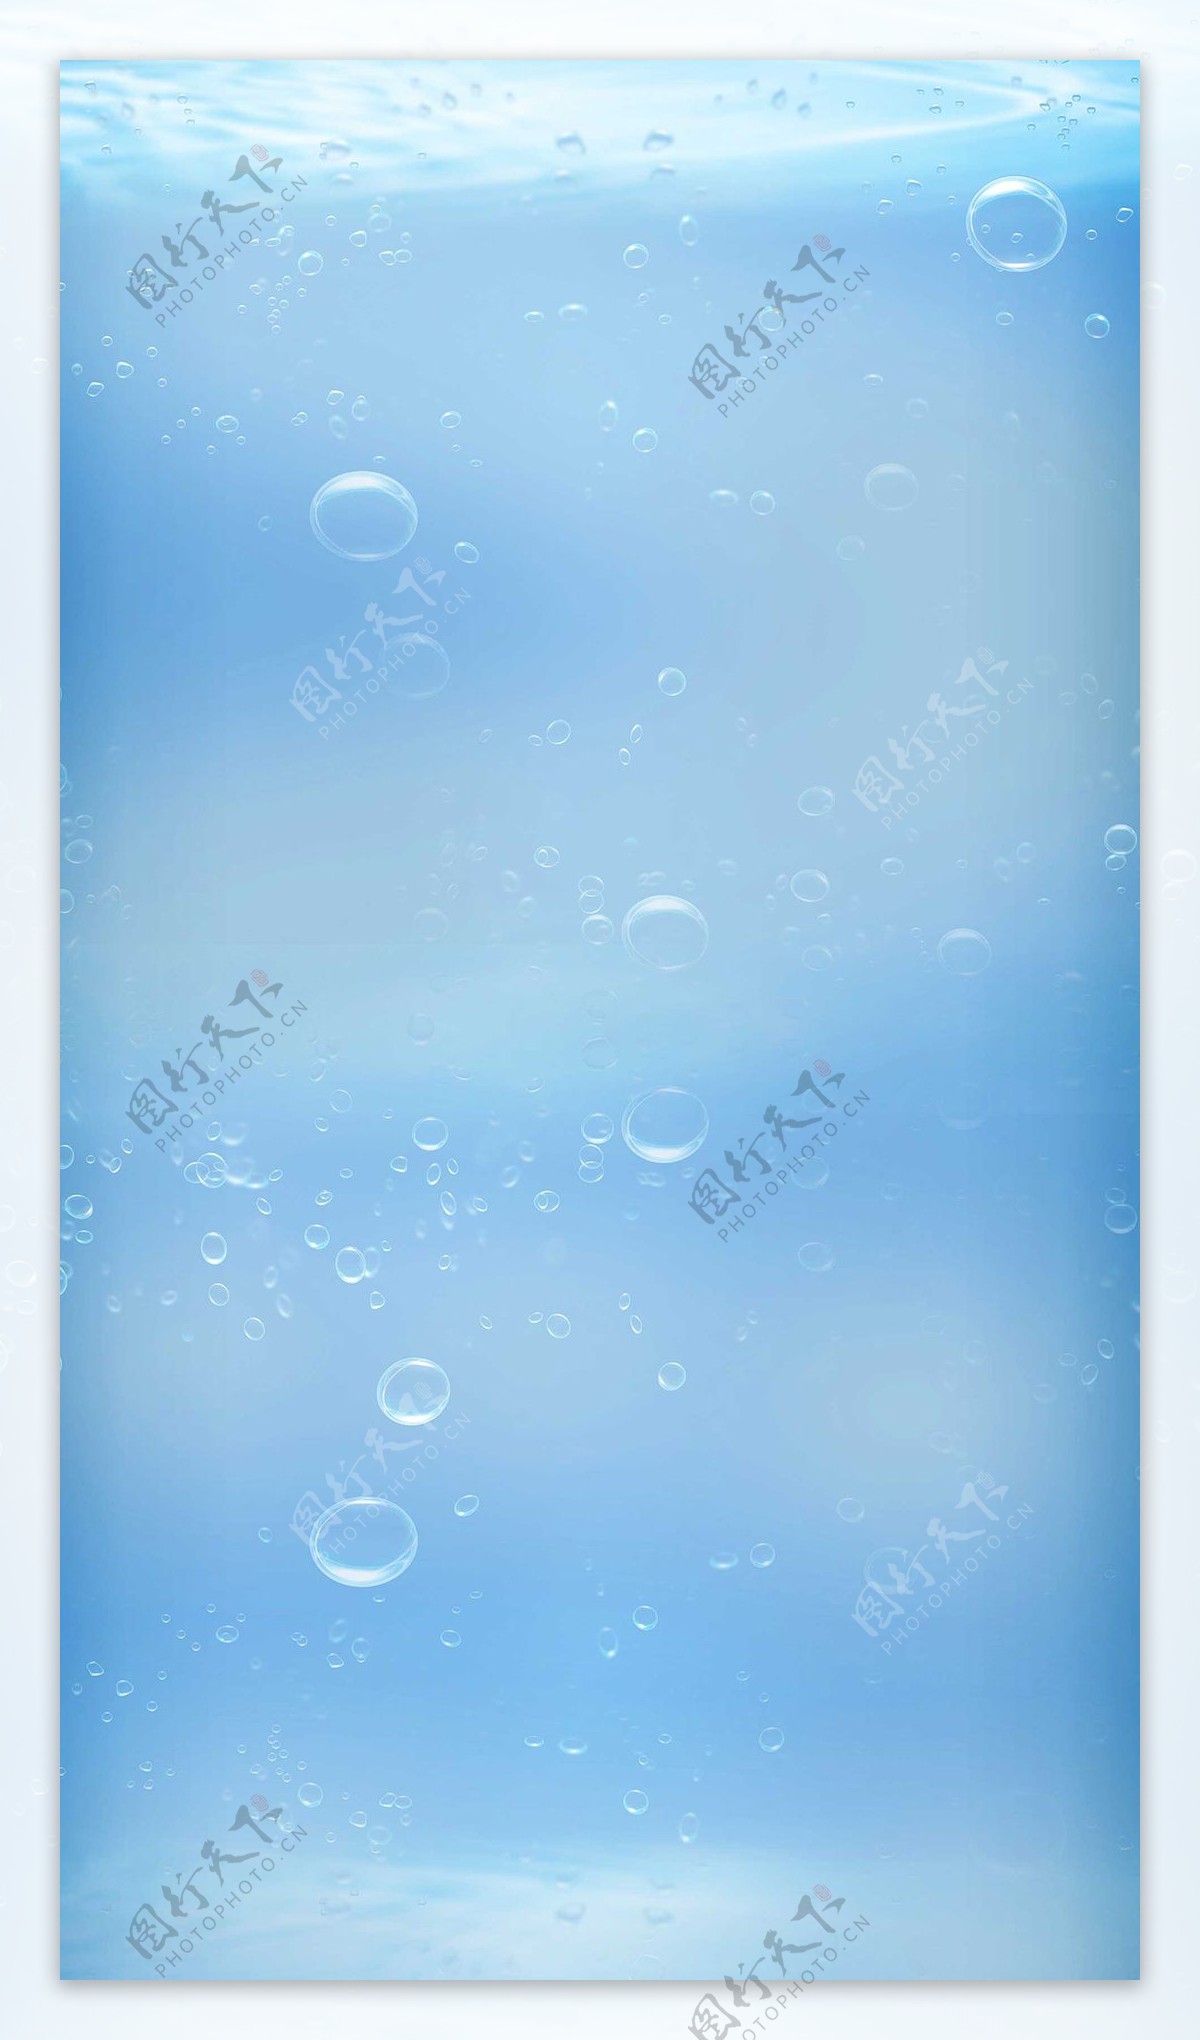 蓝色水泡H5背景素材